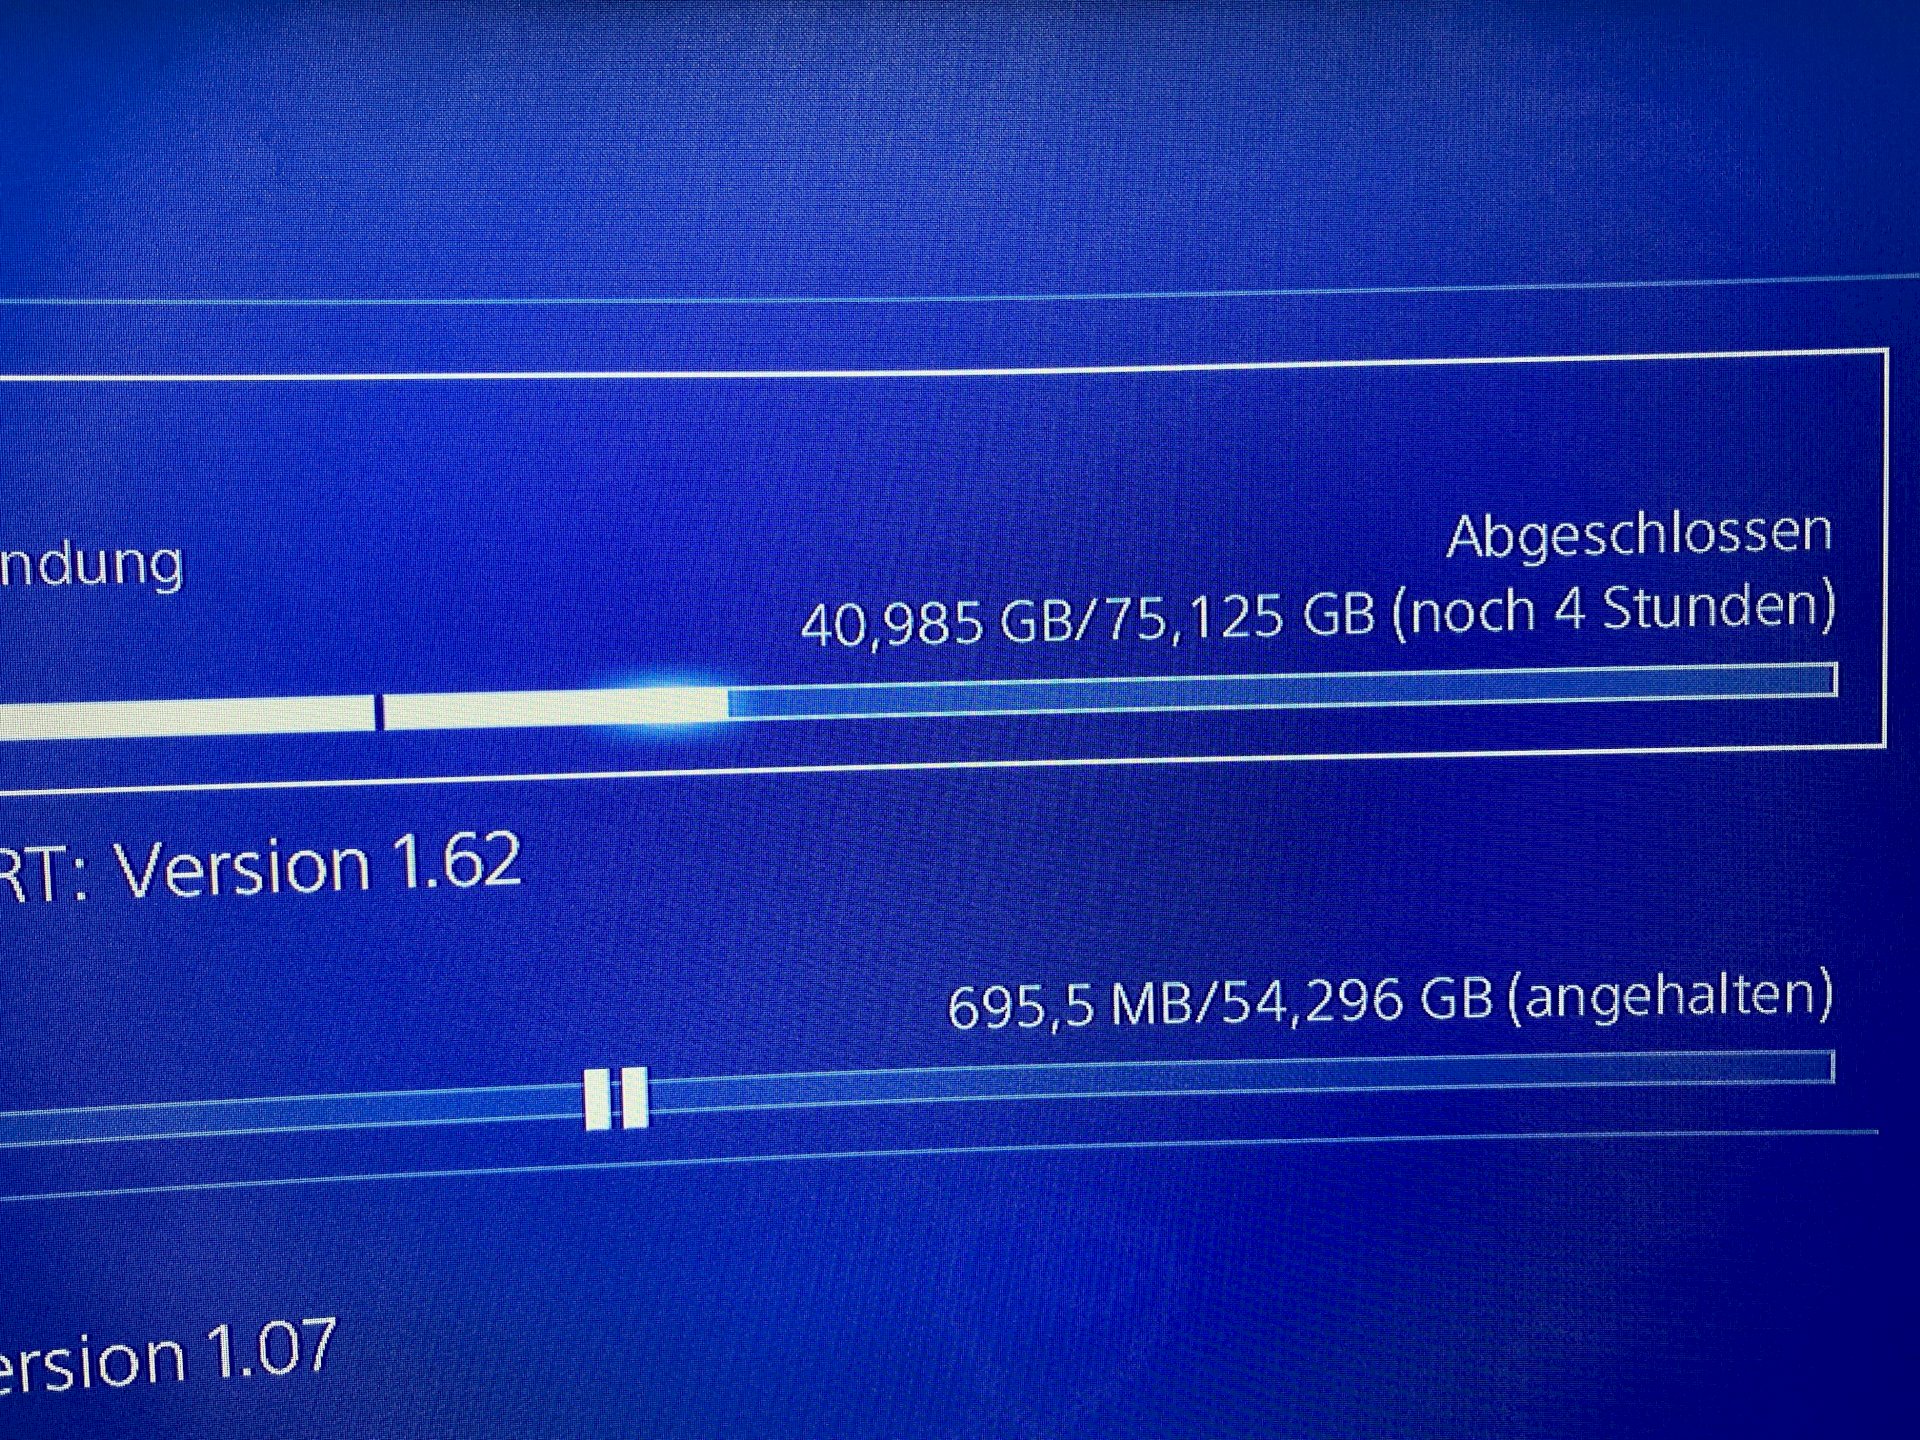 PlayStation download slow, despite good internet